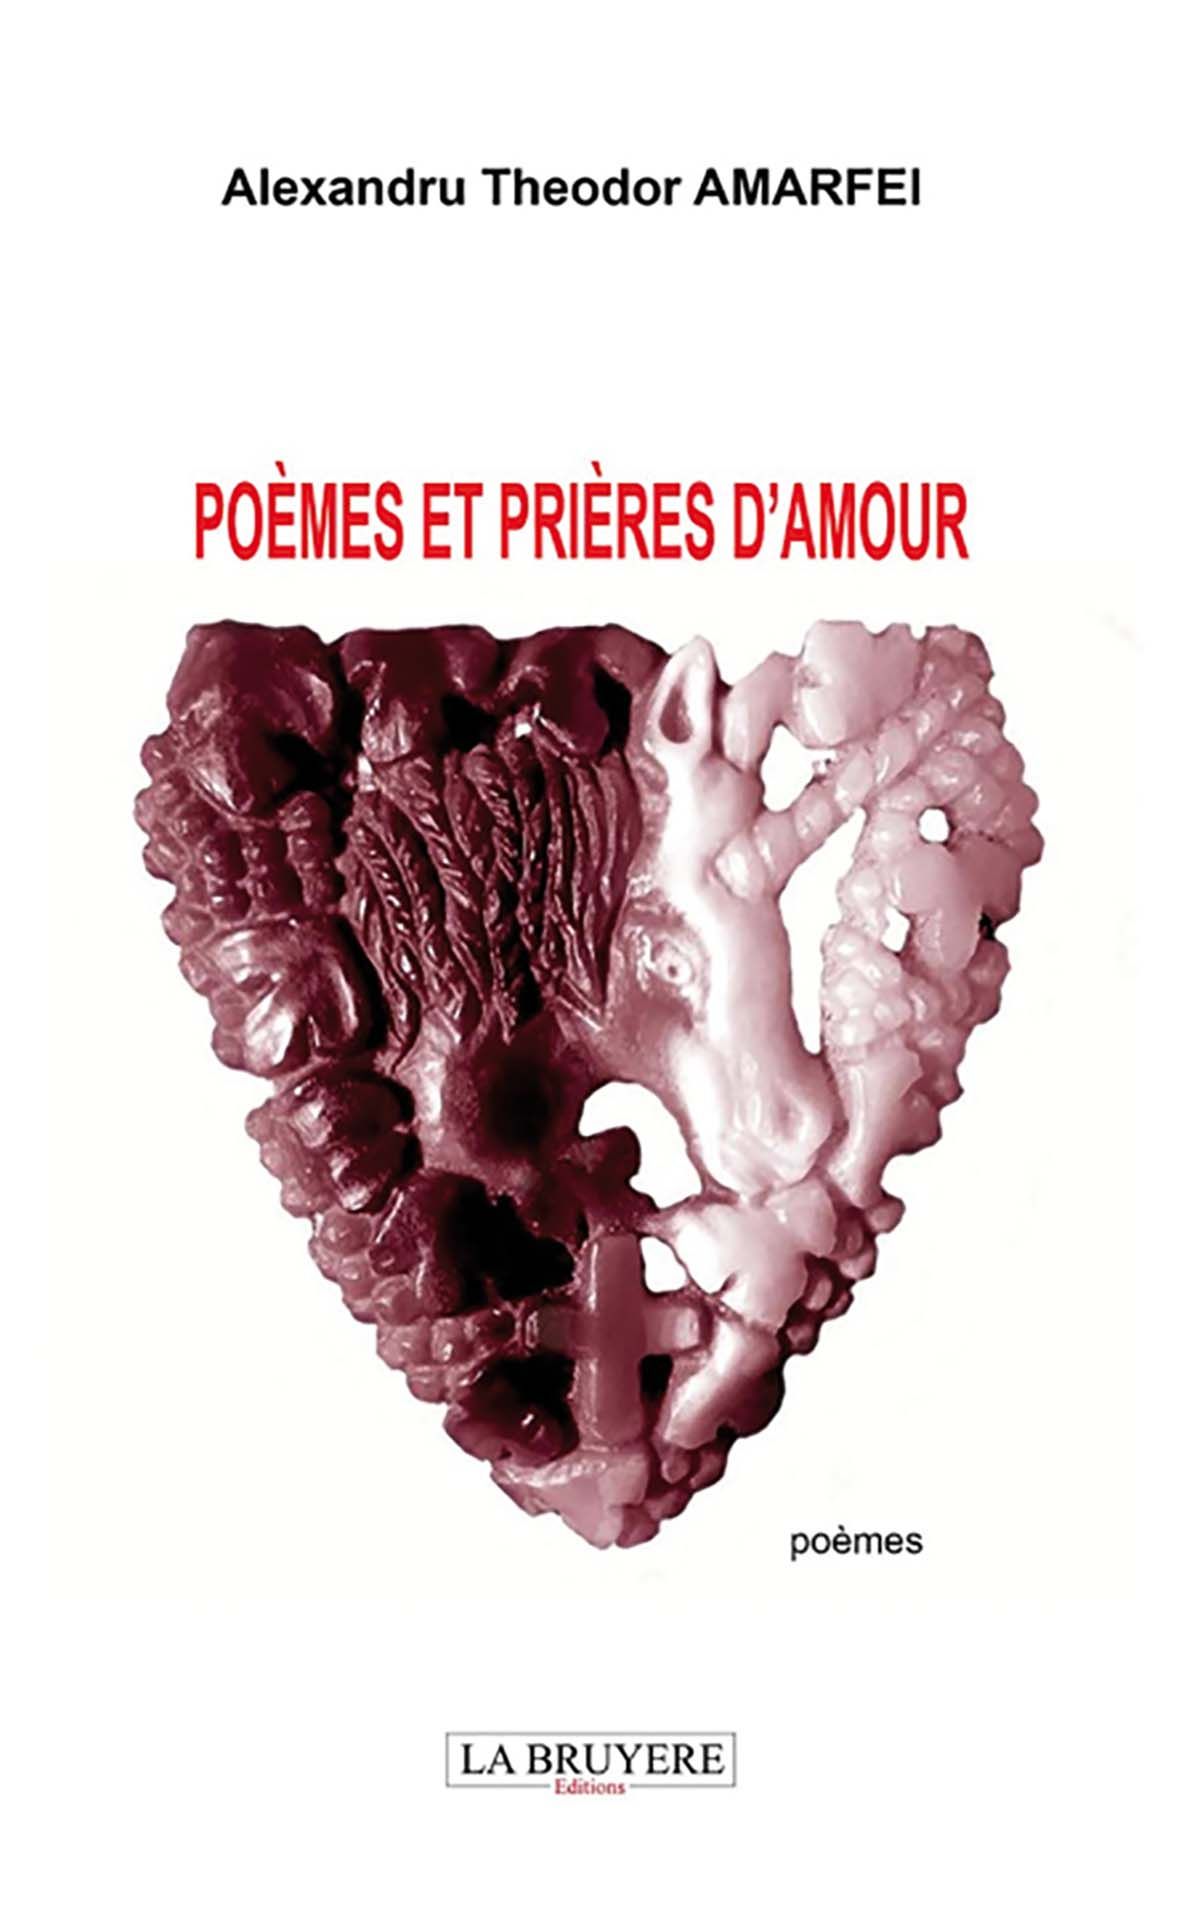 Poemes et prieres d amour 2 copy